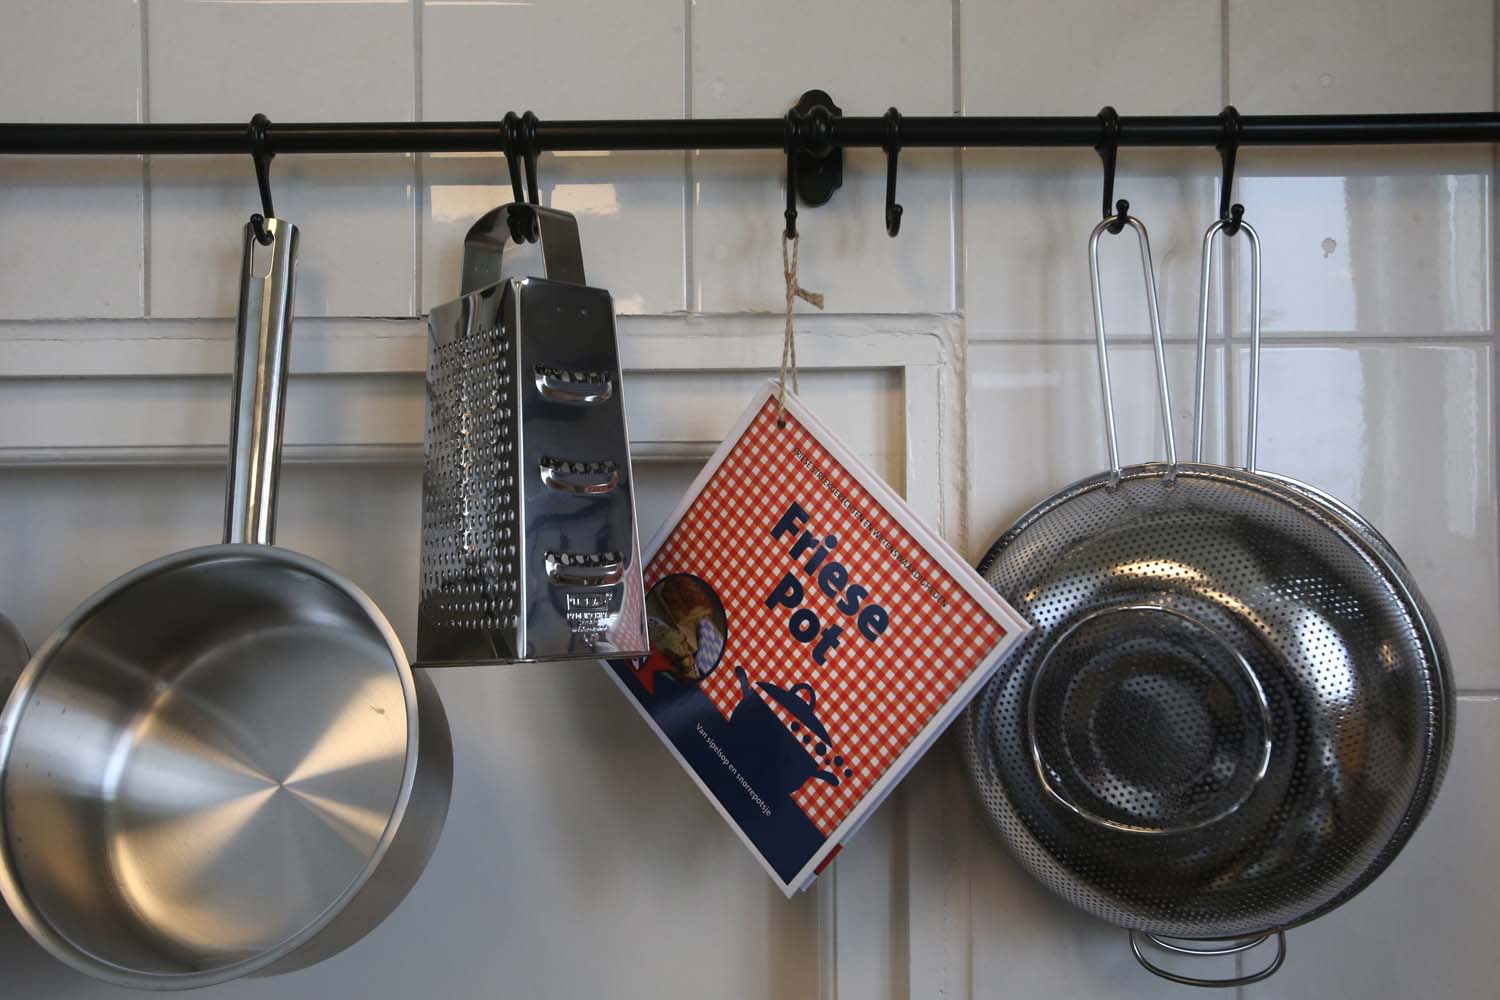 Alle kookbenodigheden zijn aanwezig, inclusief boekje met typisch Friese gerechten